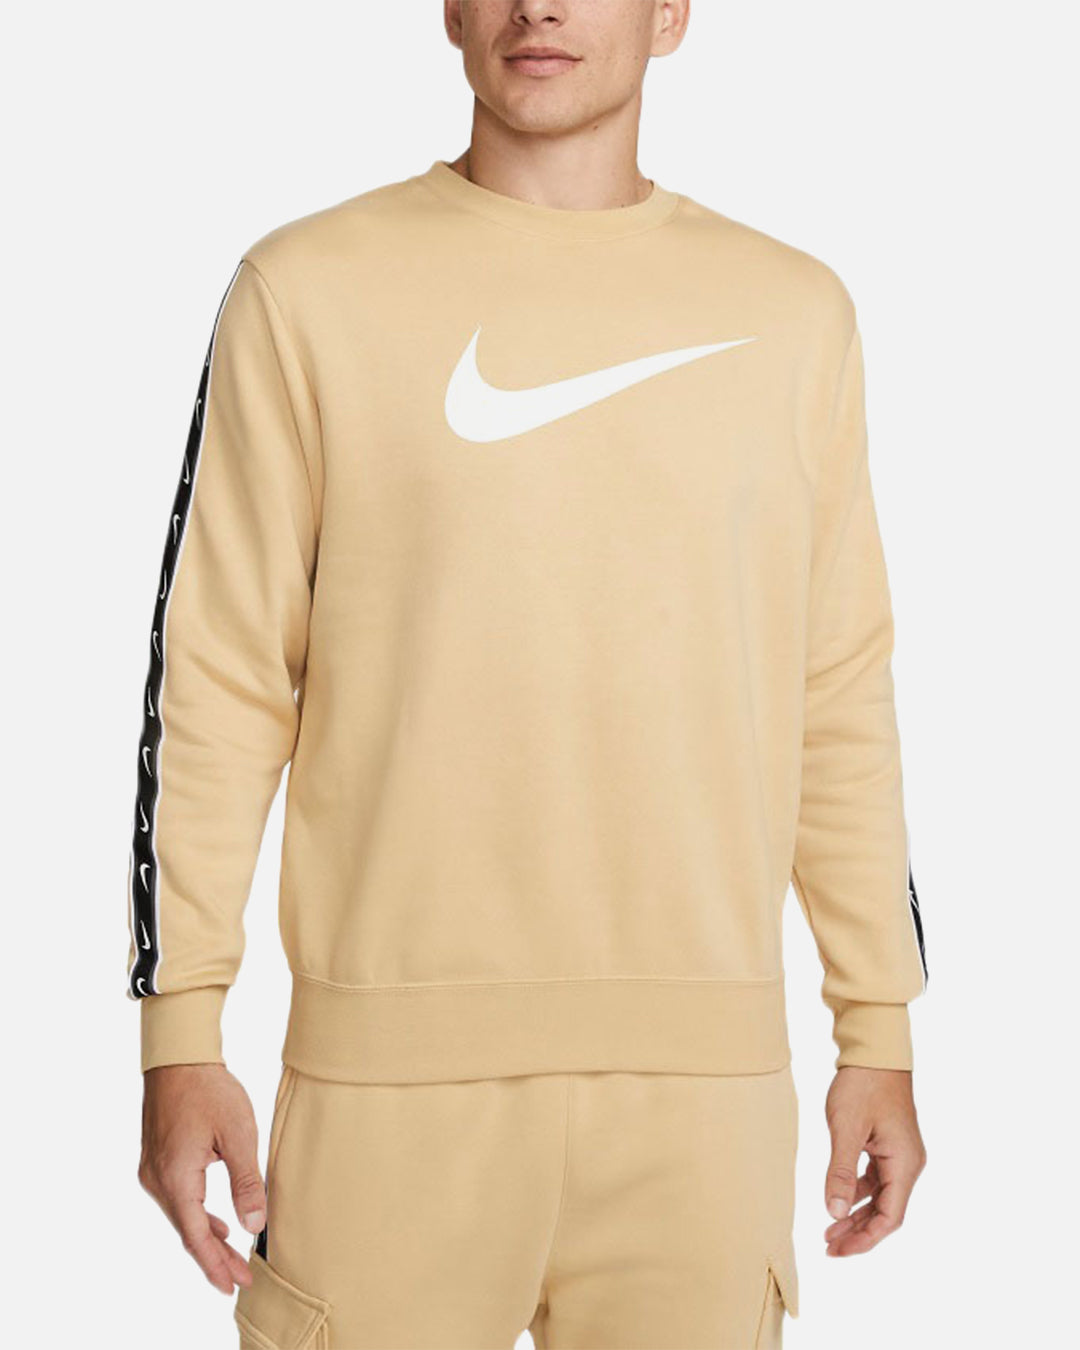 Sweatshirt Nike Sportswear Fleece – Beige/Blanc/Noir